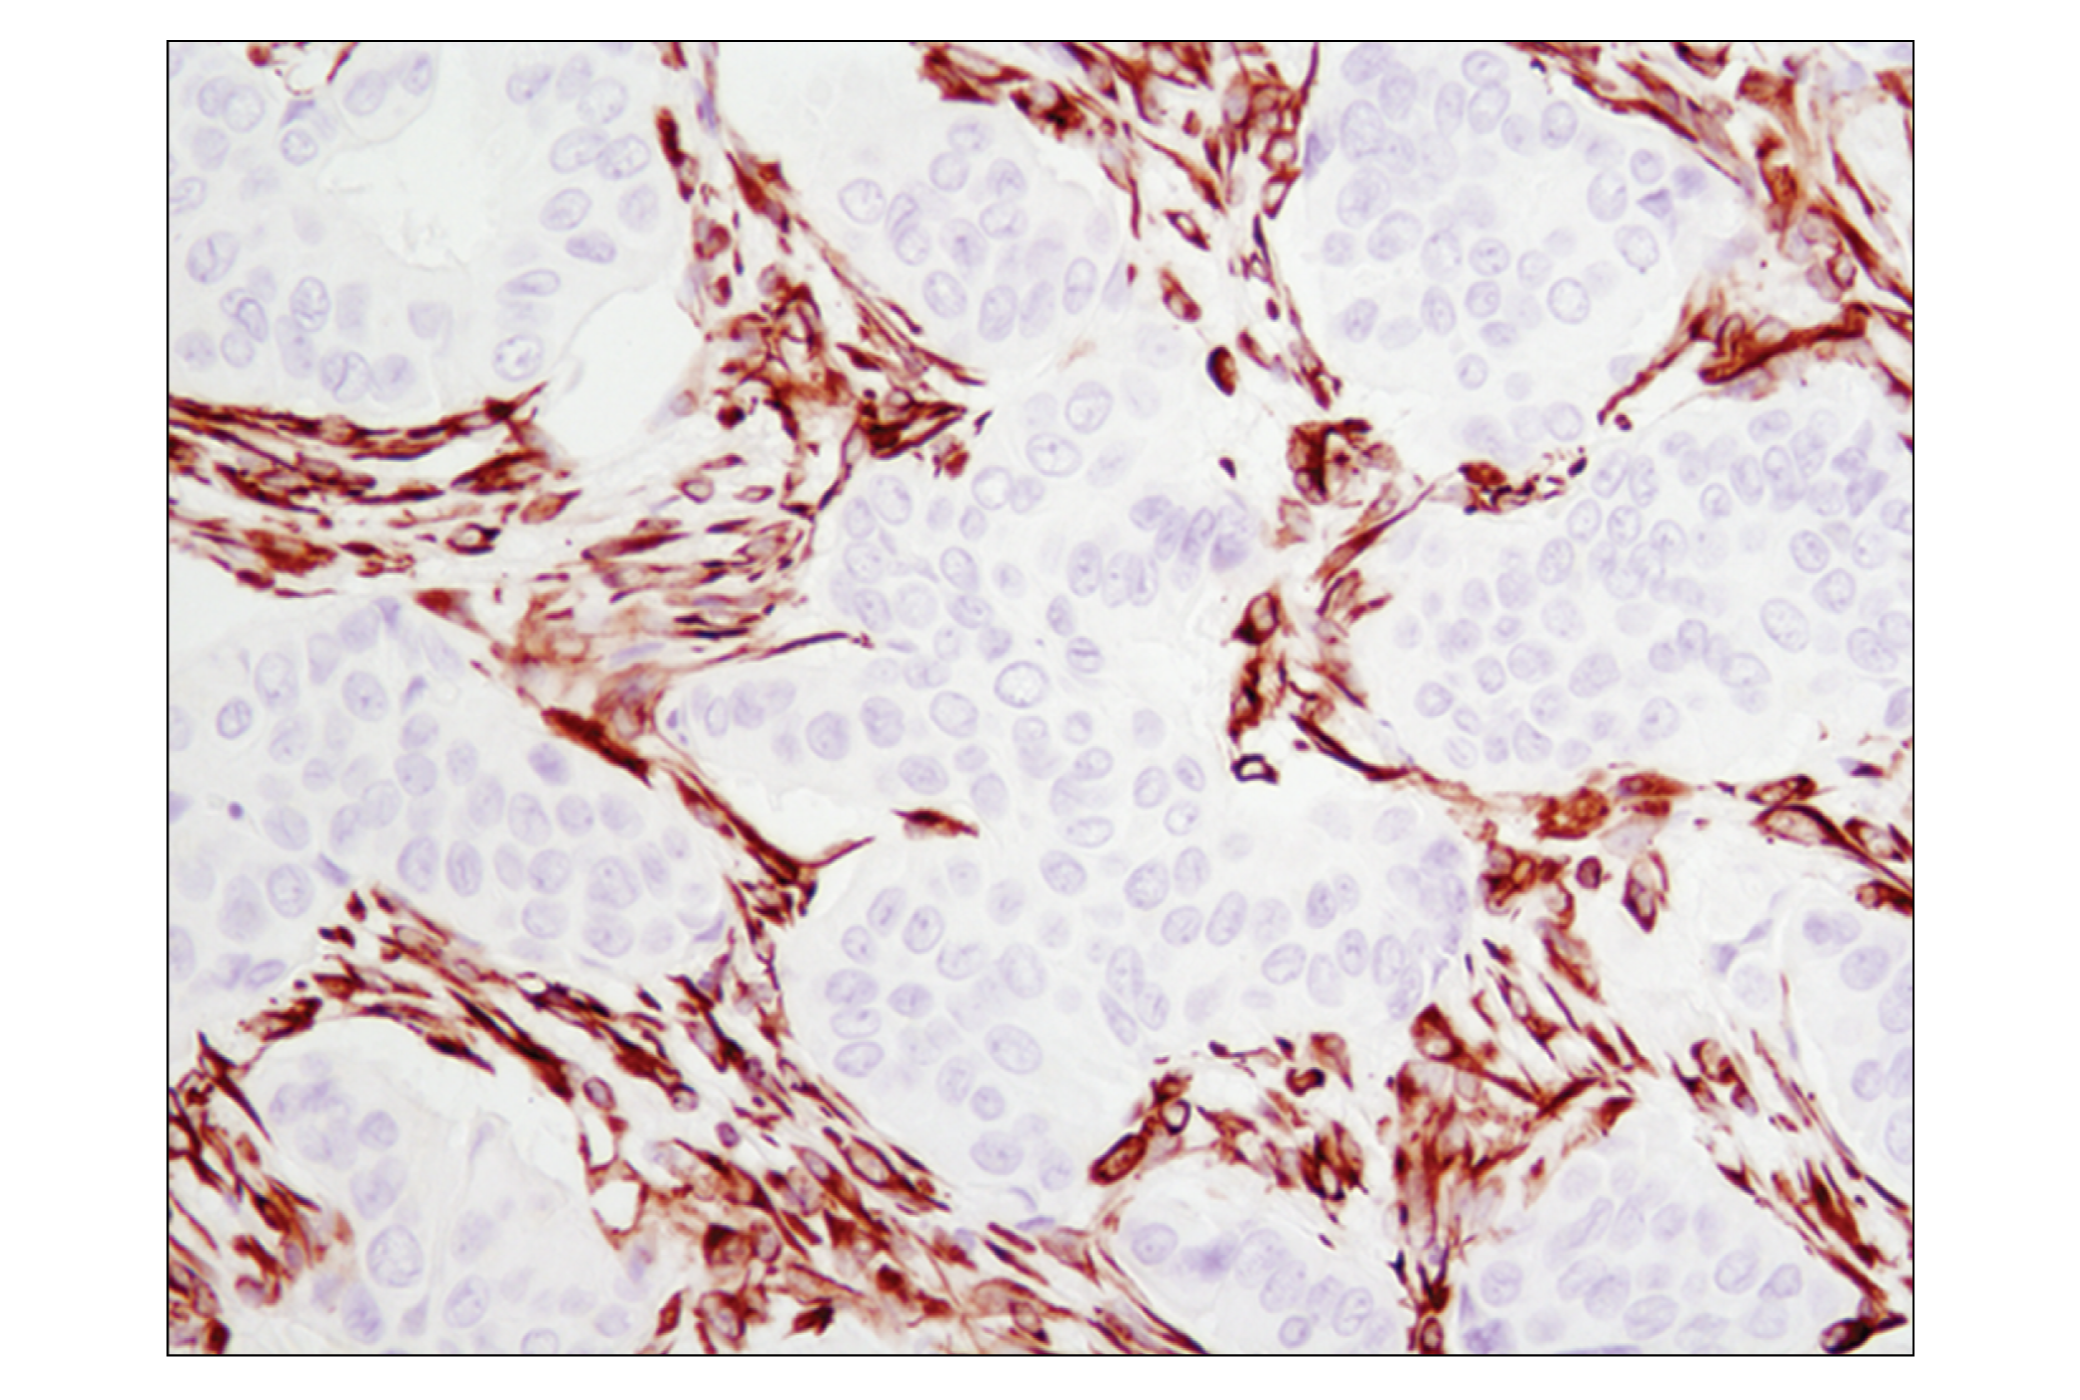  Image 23: Cell Fractionation Antibody Sampler Kit